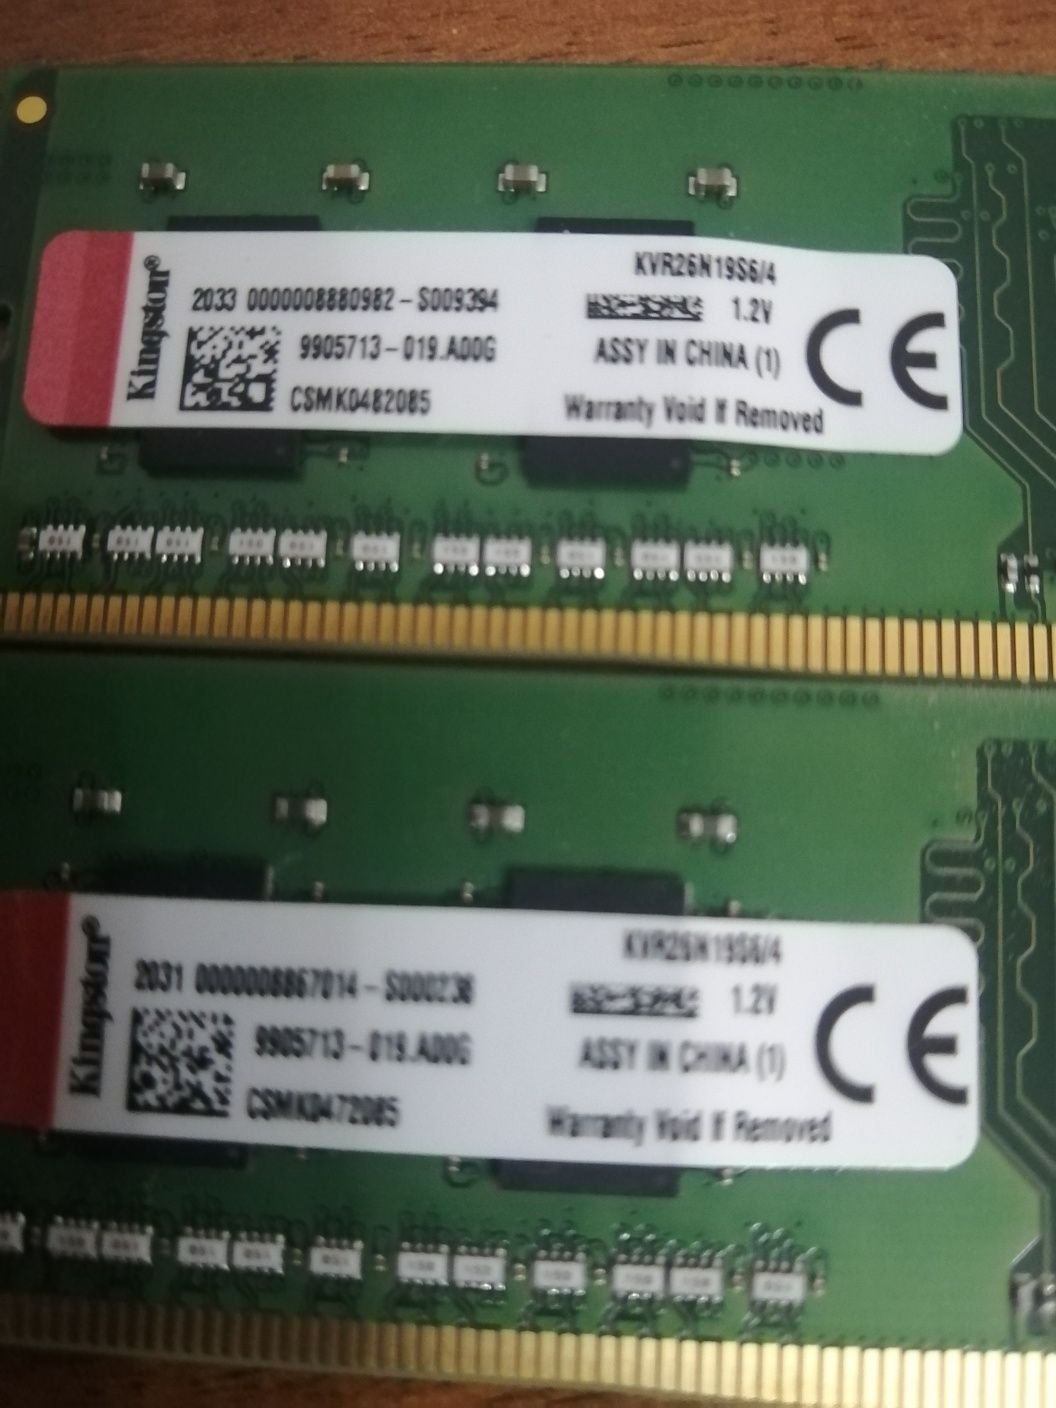 Оперативный память DDR 4 2666 4 гиг 4шт Кингстон Оргинал